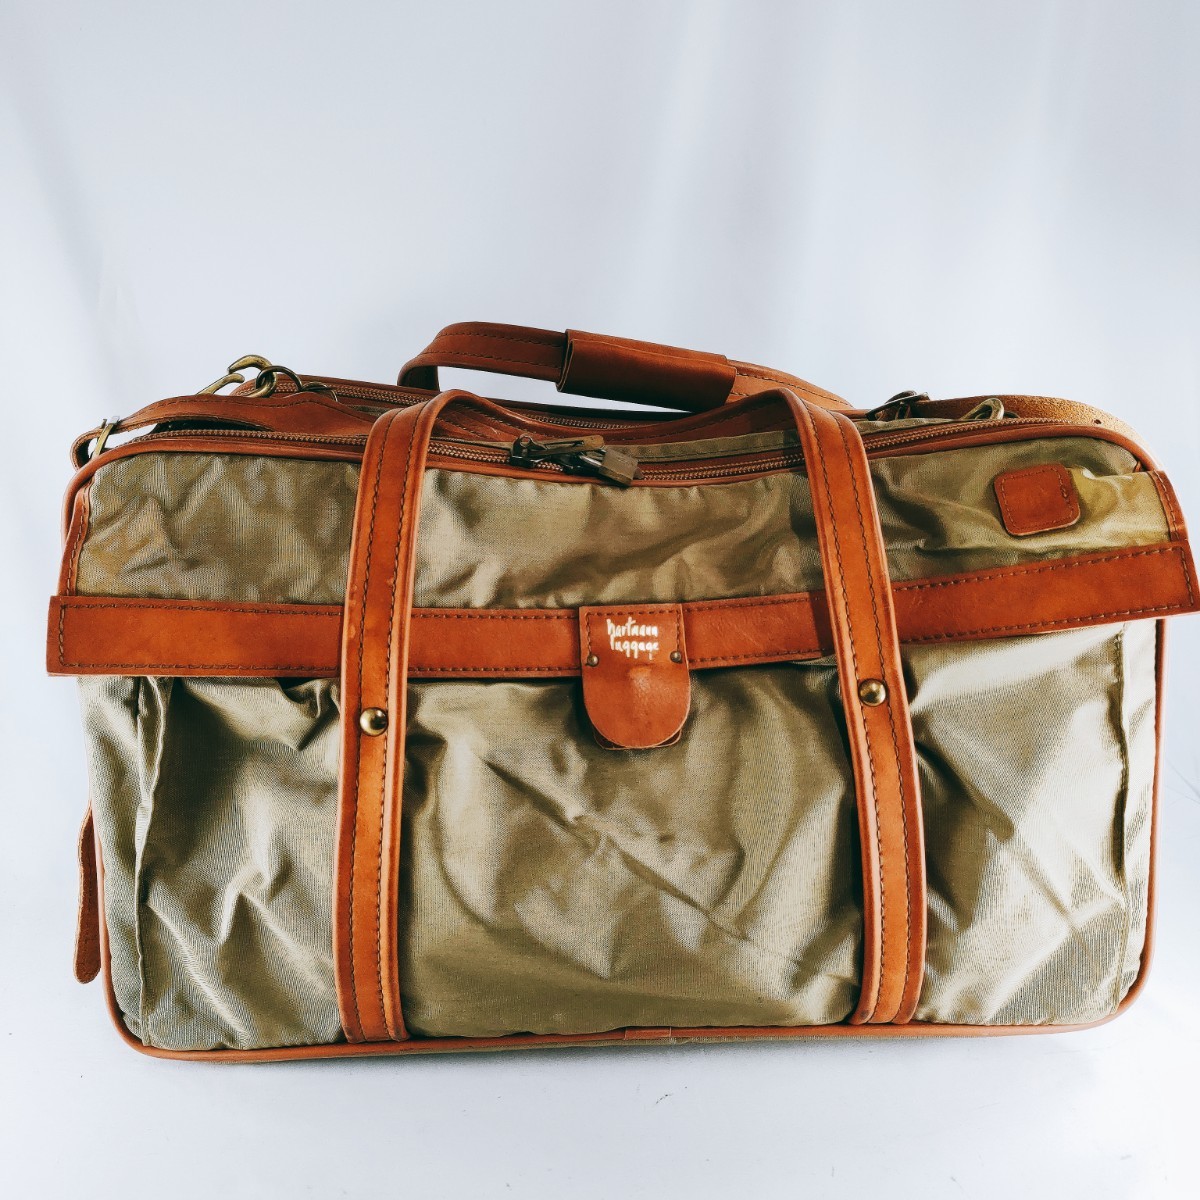 hartmann luggage ハートマンラゲッジ ボストンバッグ 手提げ 肩掛け カーキ系 ヴィンテージ 旅行鞄 出張 トラベル ハンド トート 鞄